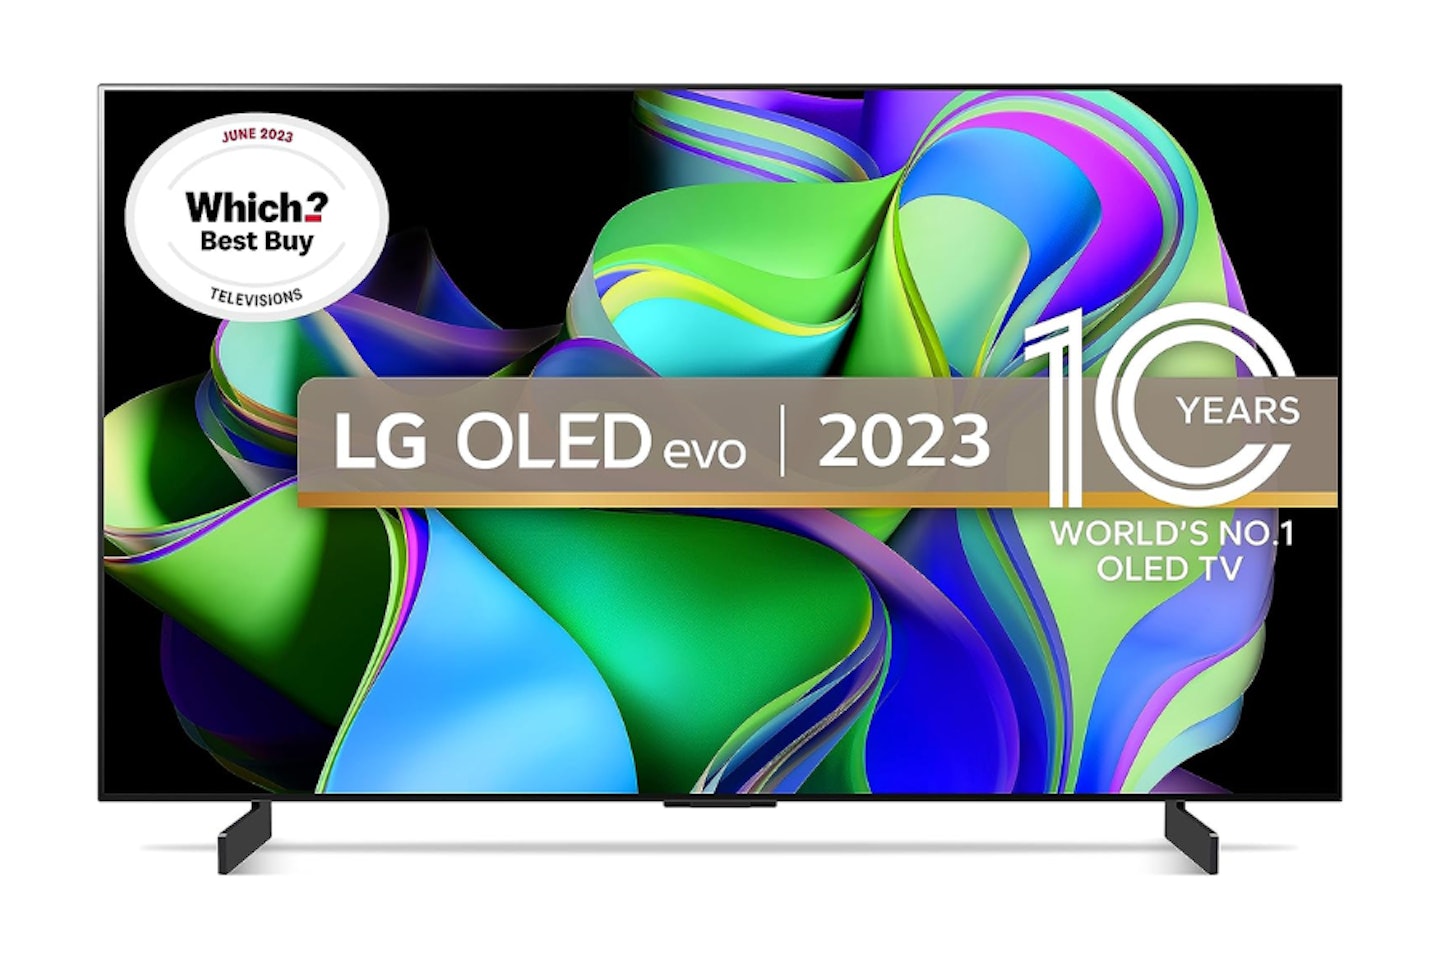 LG OLED evo C3 42" 4K Smart TV, 2023